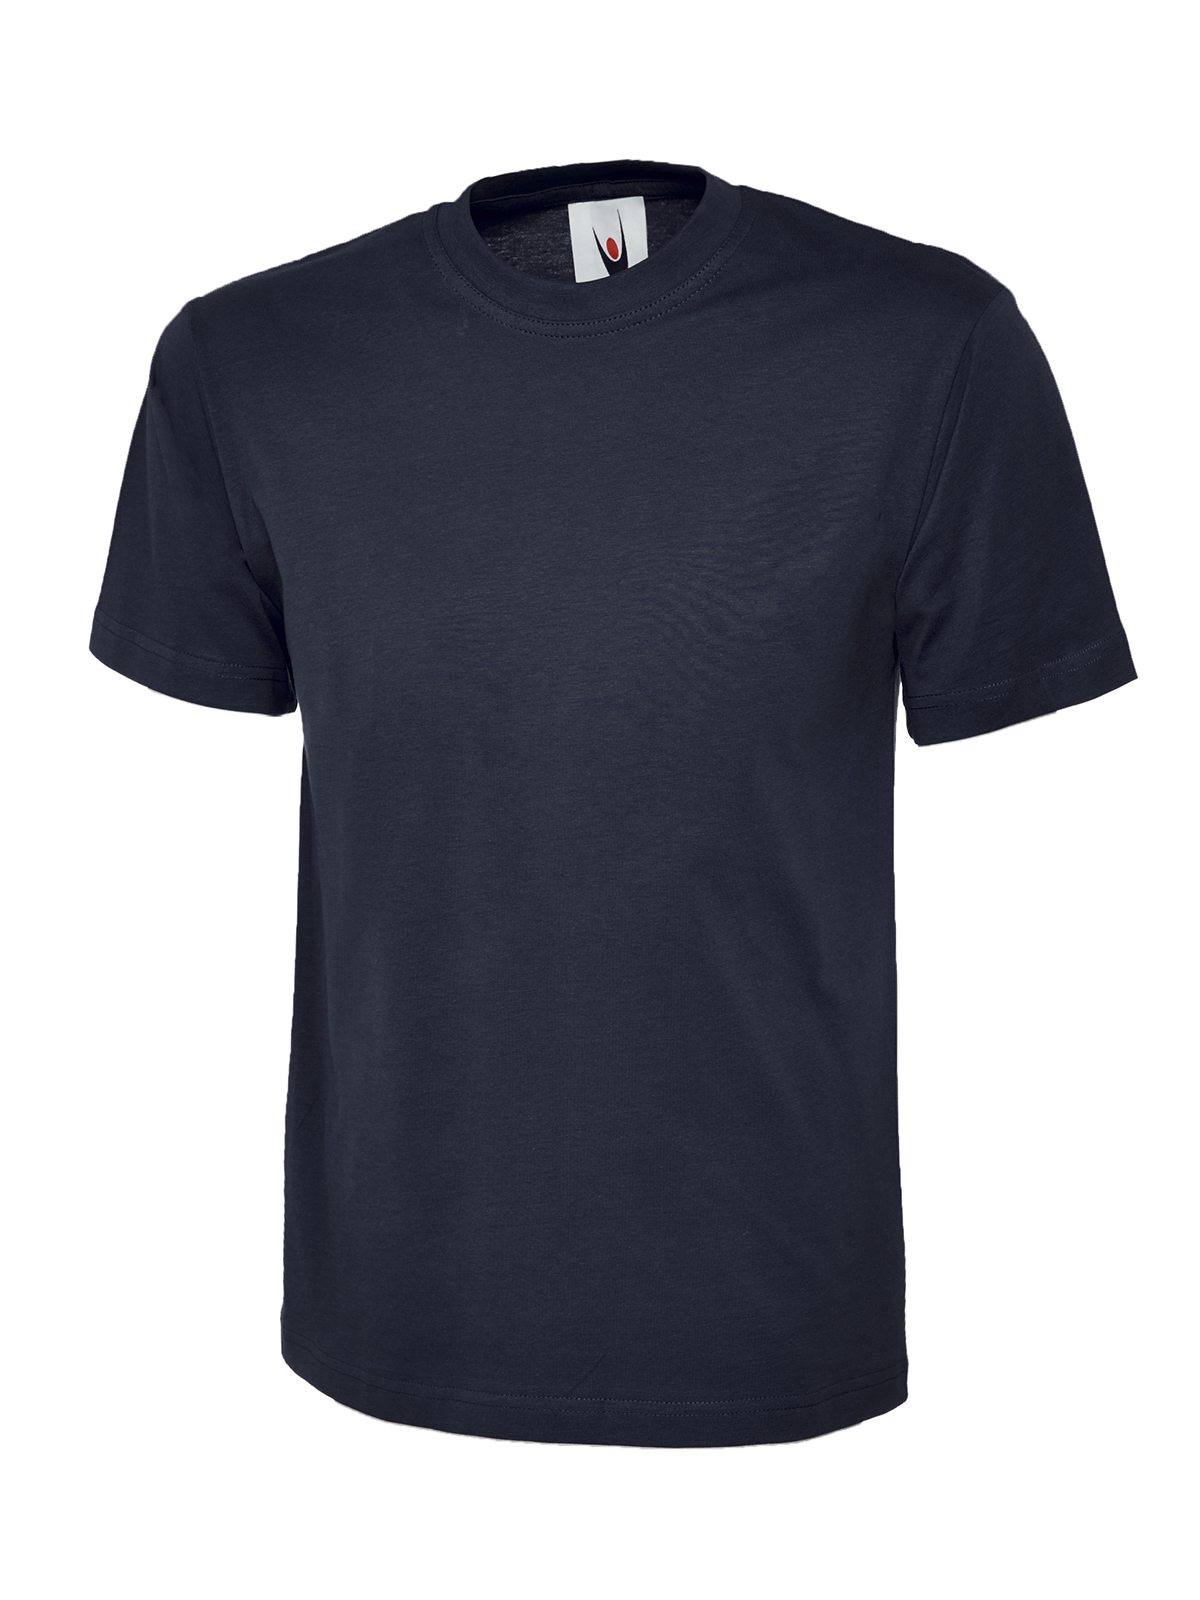 Uneek Herren T-Shirt Classic marineblau